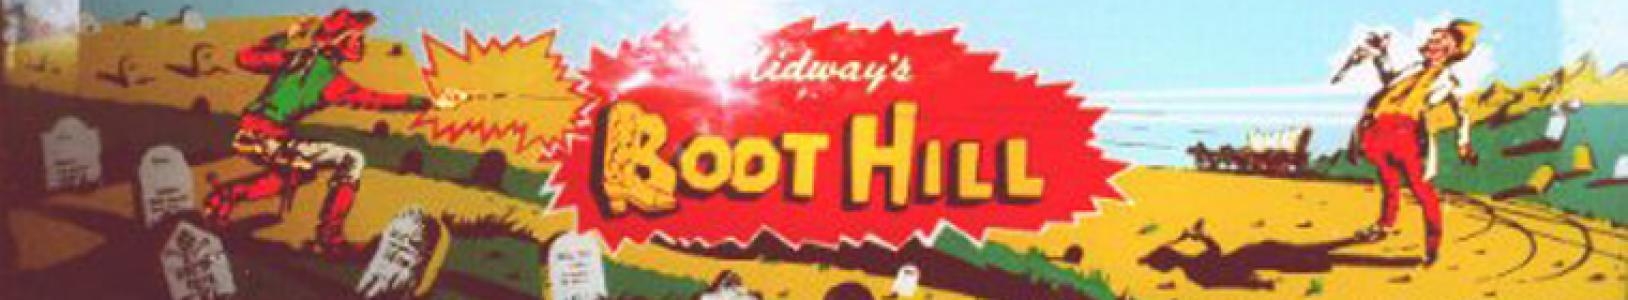 Boot Hill banner